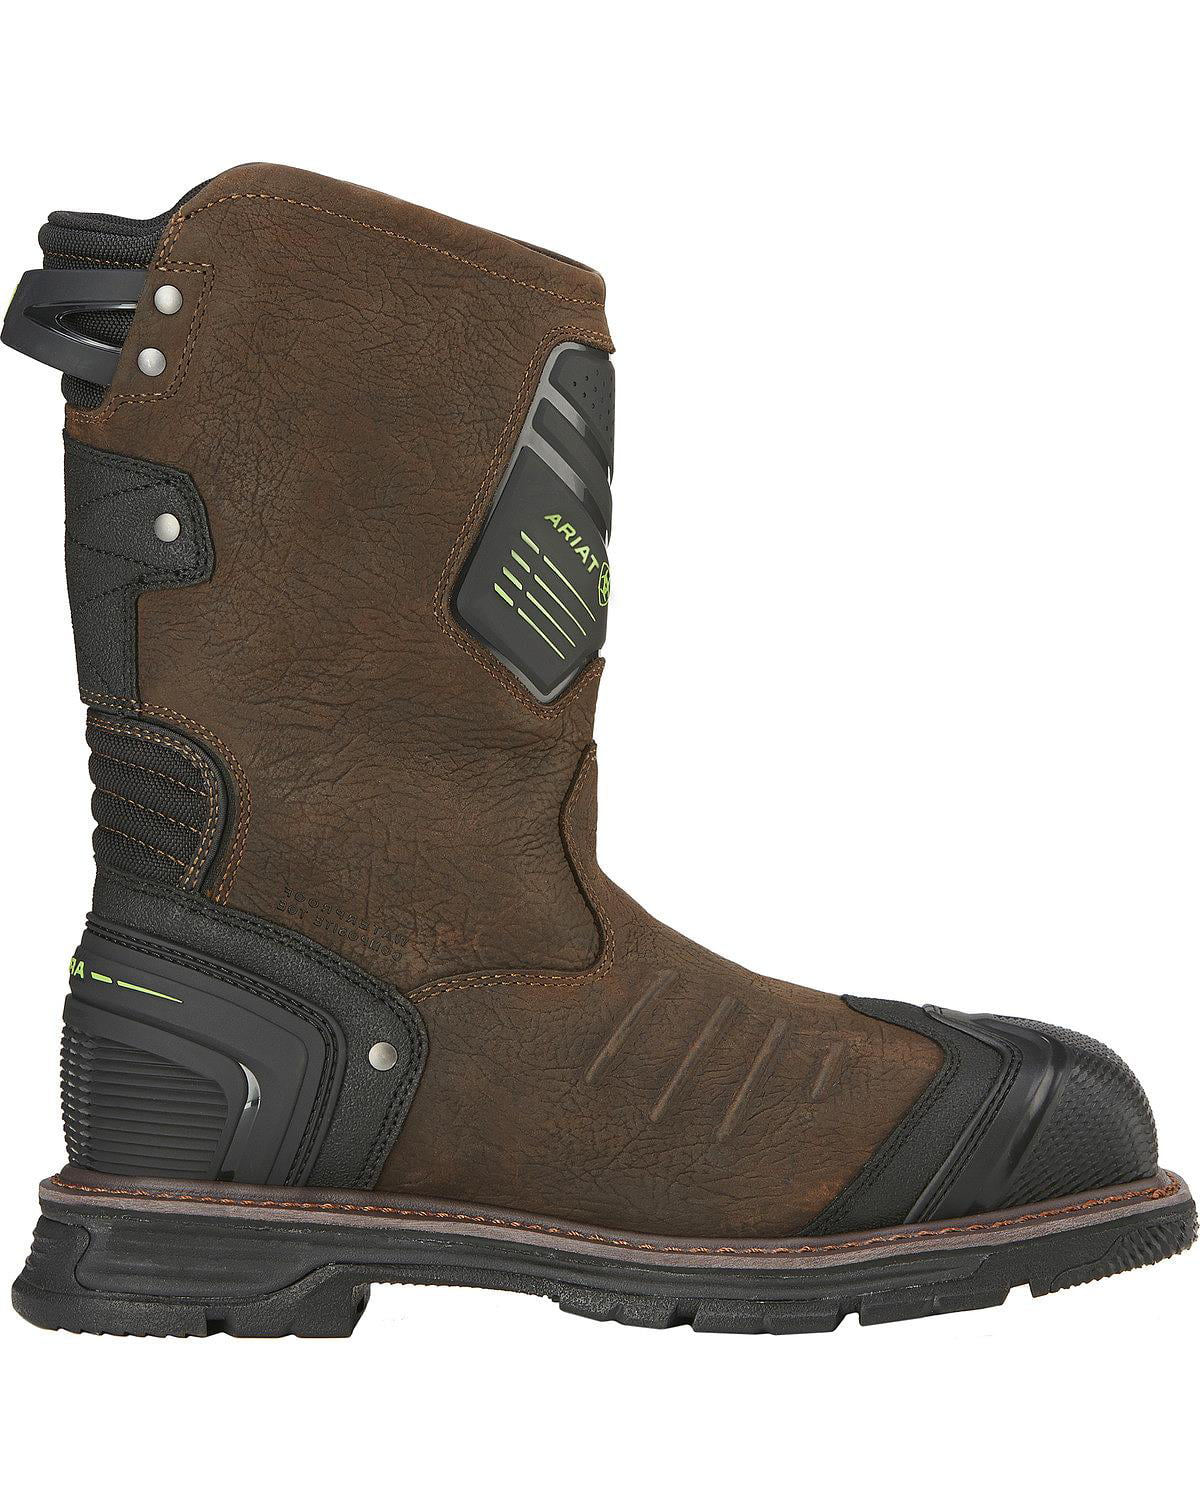 ariat men's catalyst vx waterproof composite toe work boots